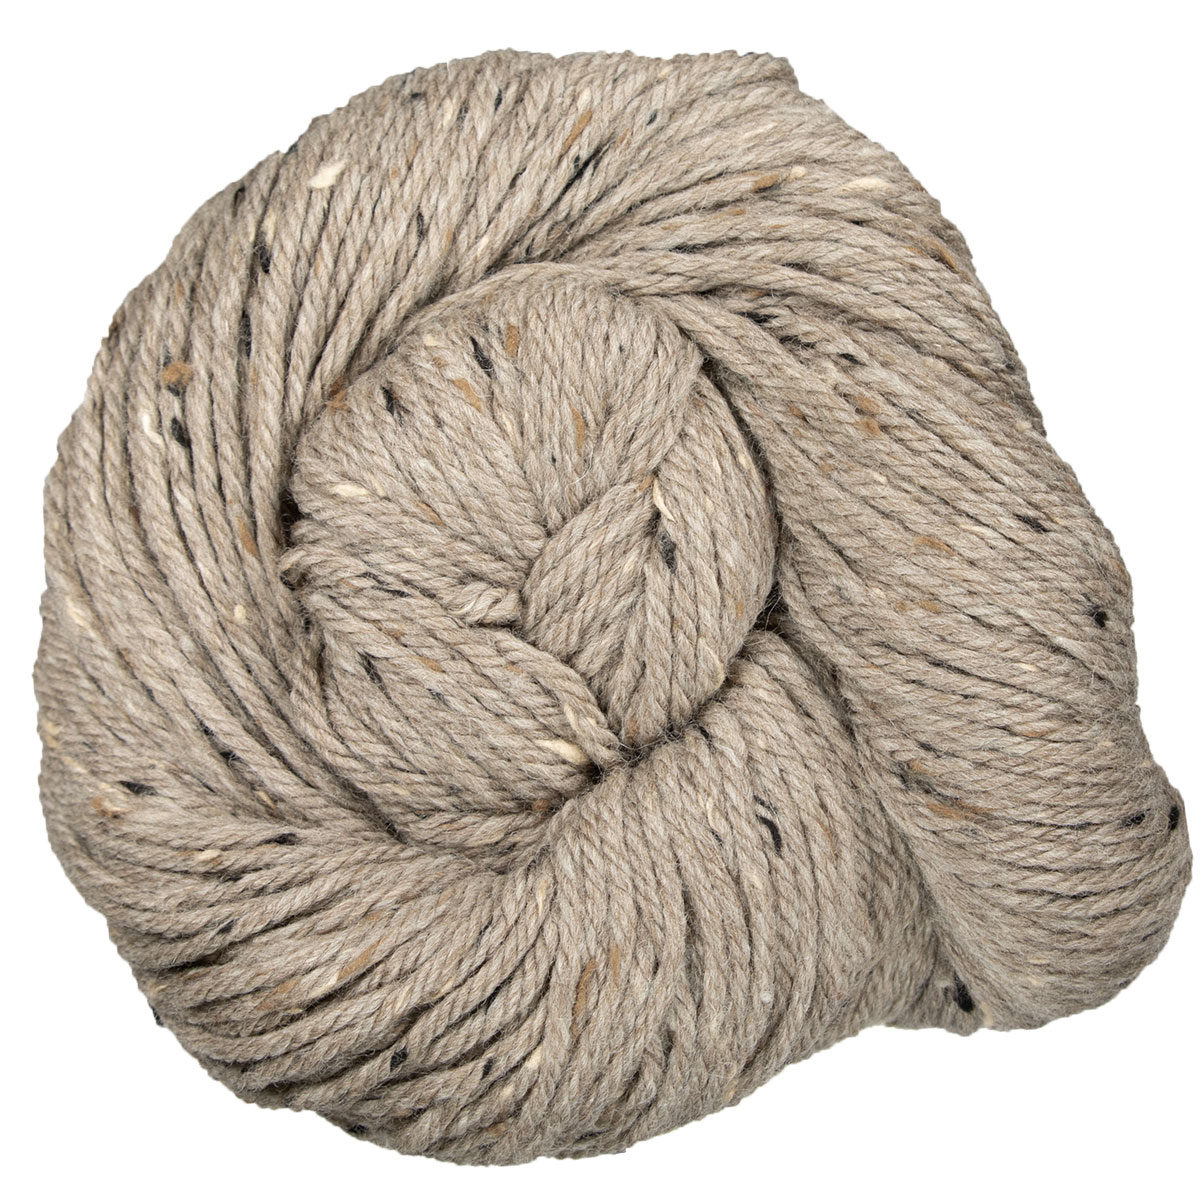 Blue Sky Fibers Woolstok Tweed (Aran) Yarn - 3312 Sage Rose at